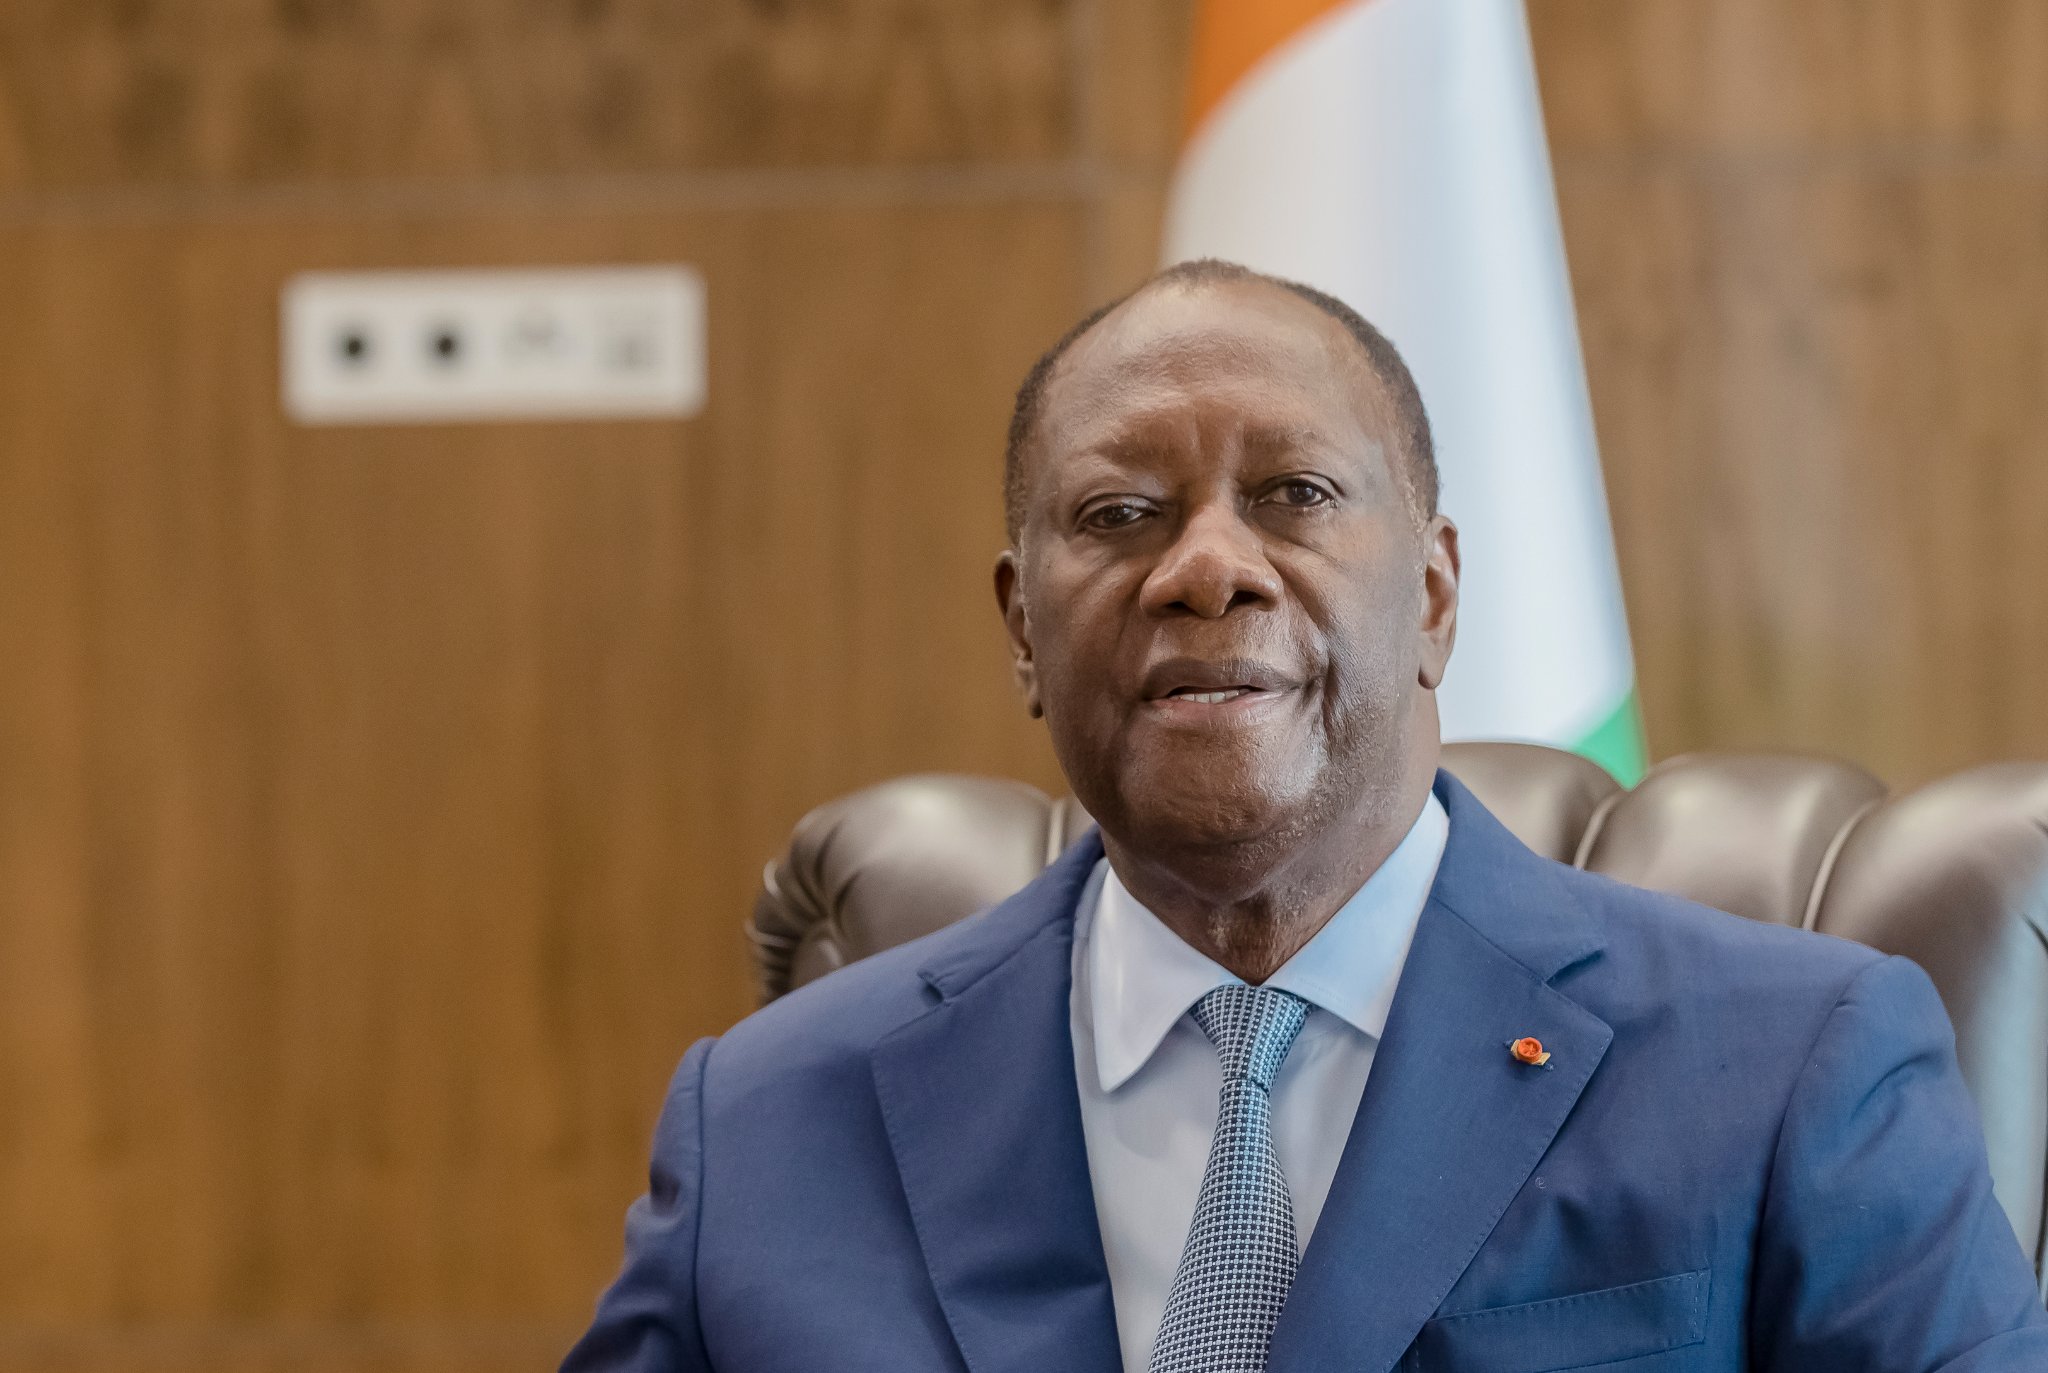 62eme anniversaire de l'indépendance : Ouattara accorde la grâce présidentielle à Gbagbo et deux ex officiers détenus depuis 2011